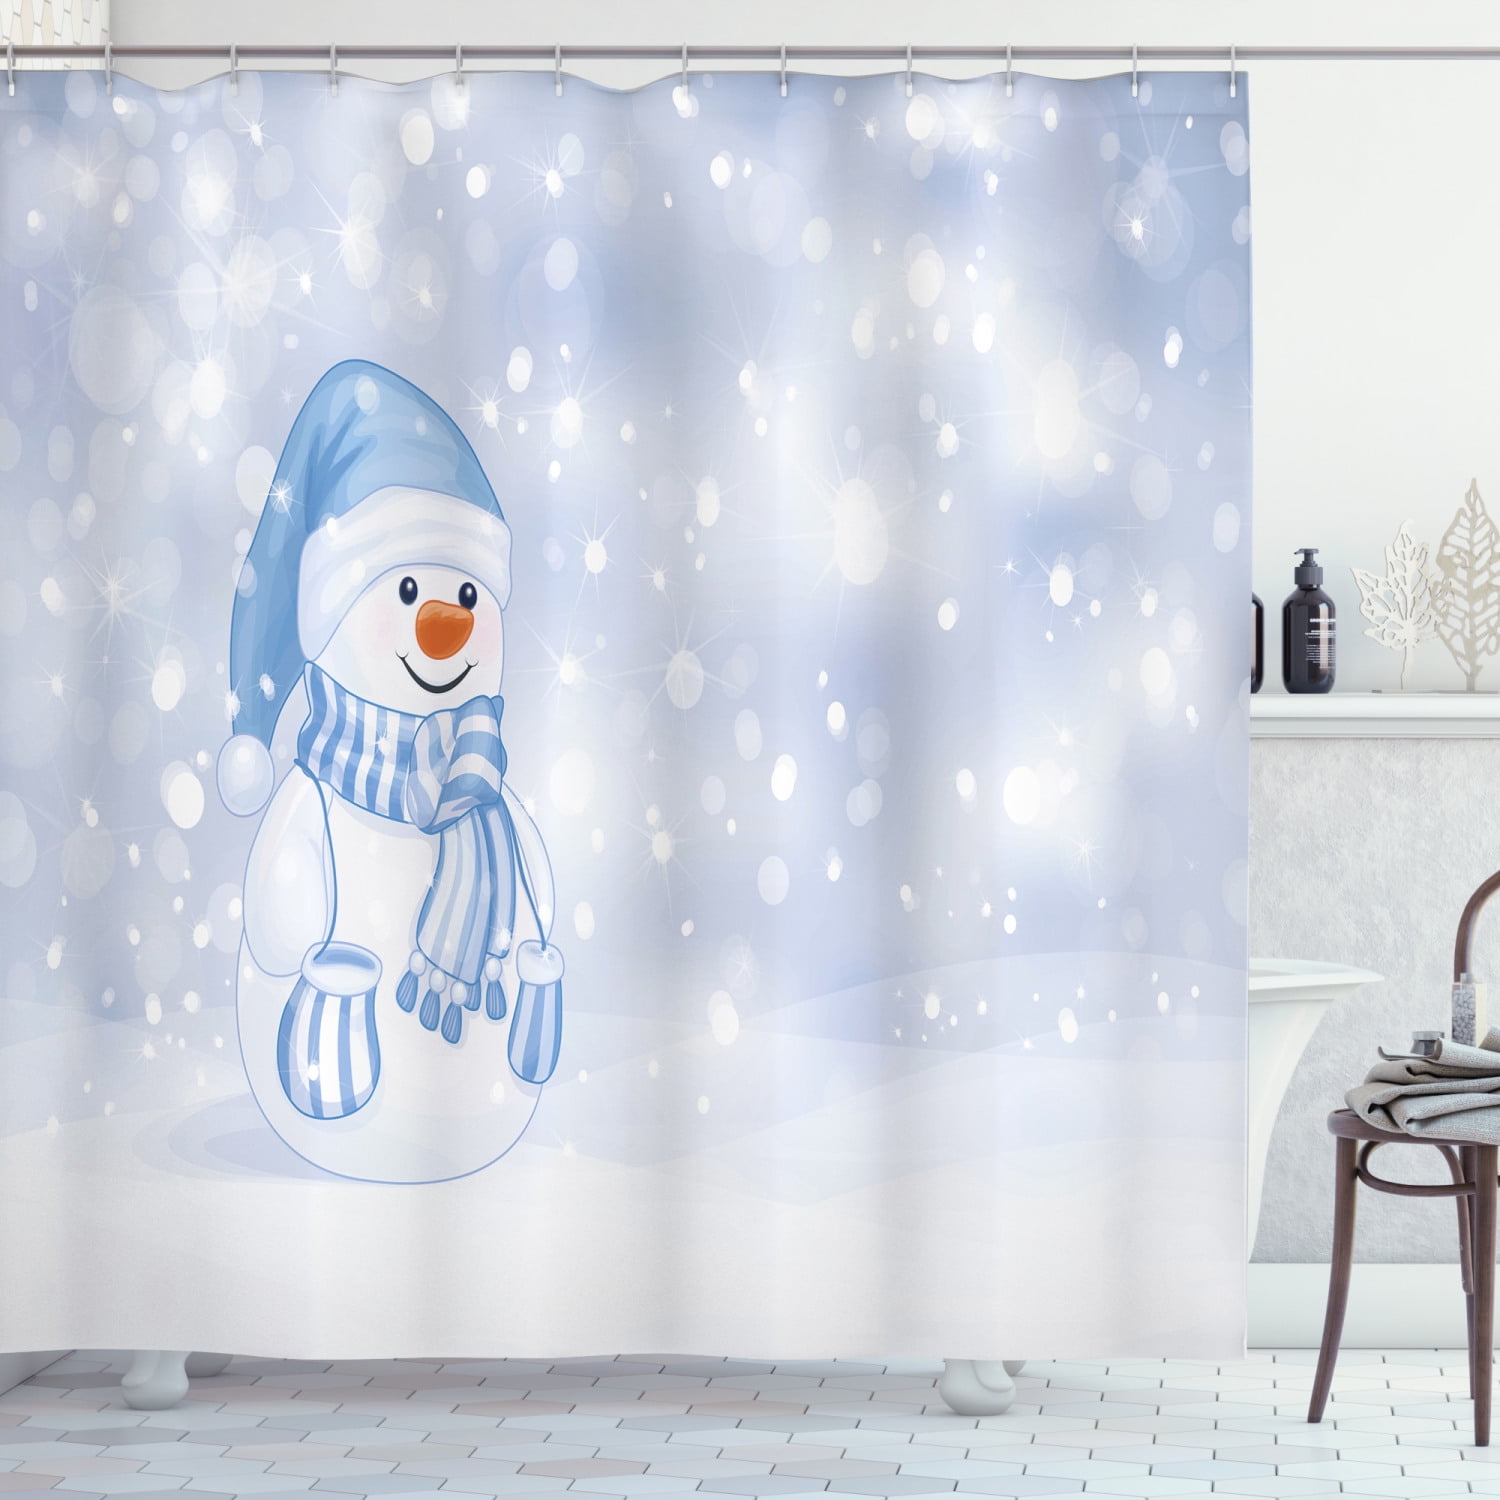 Cartoon Design Merry Christmas Snowman Fabric Shower Curtain Set Bathroom Decor 